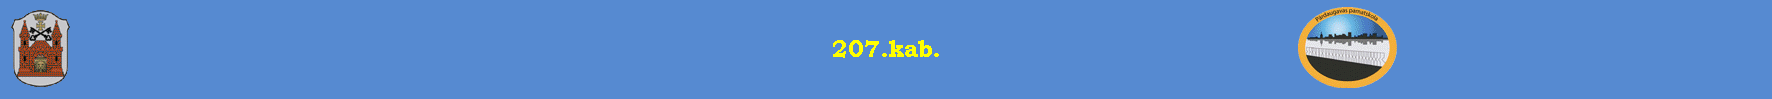 207.kab.